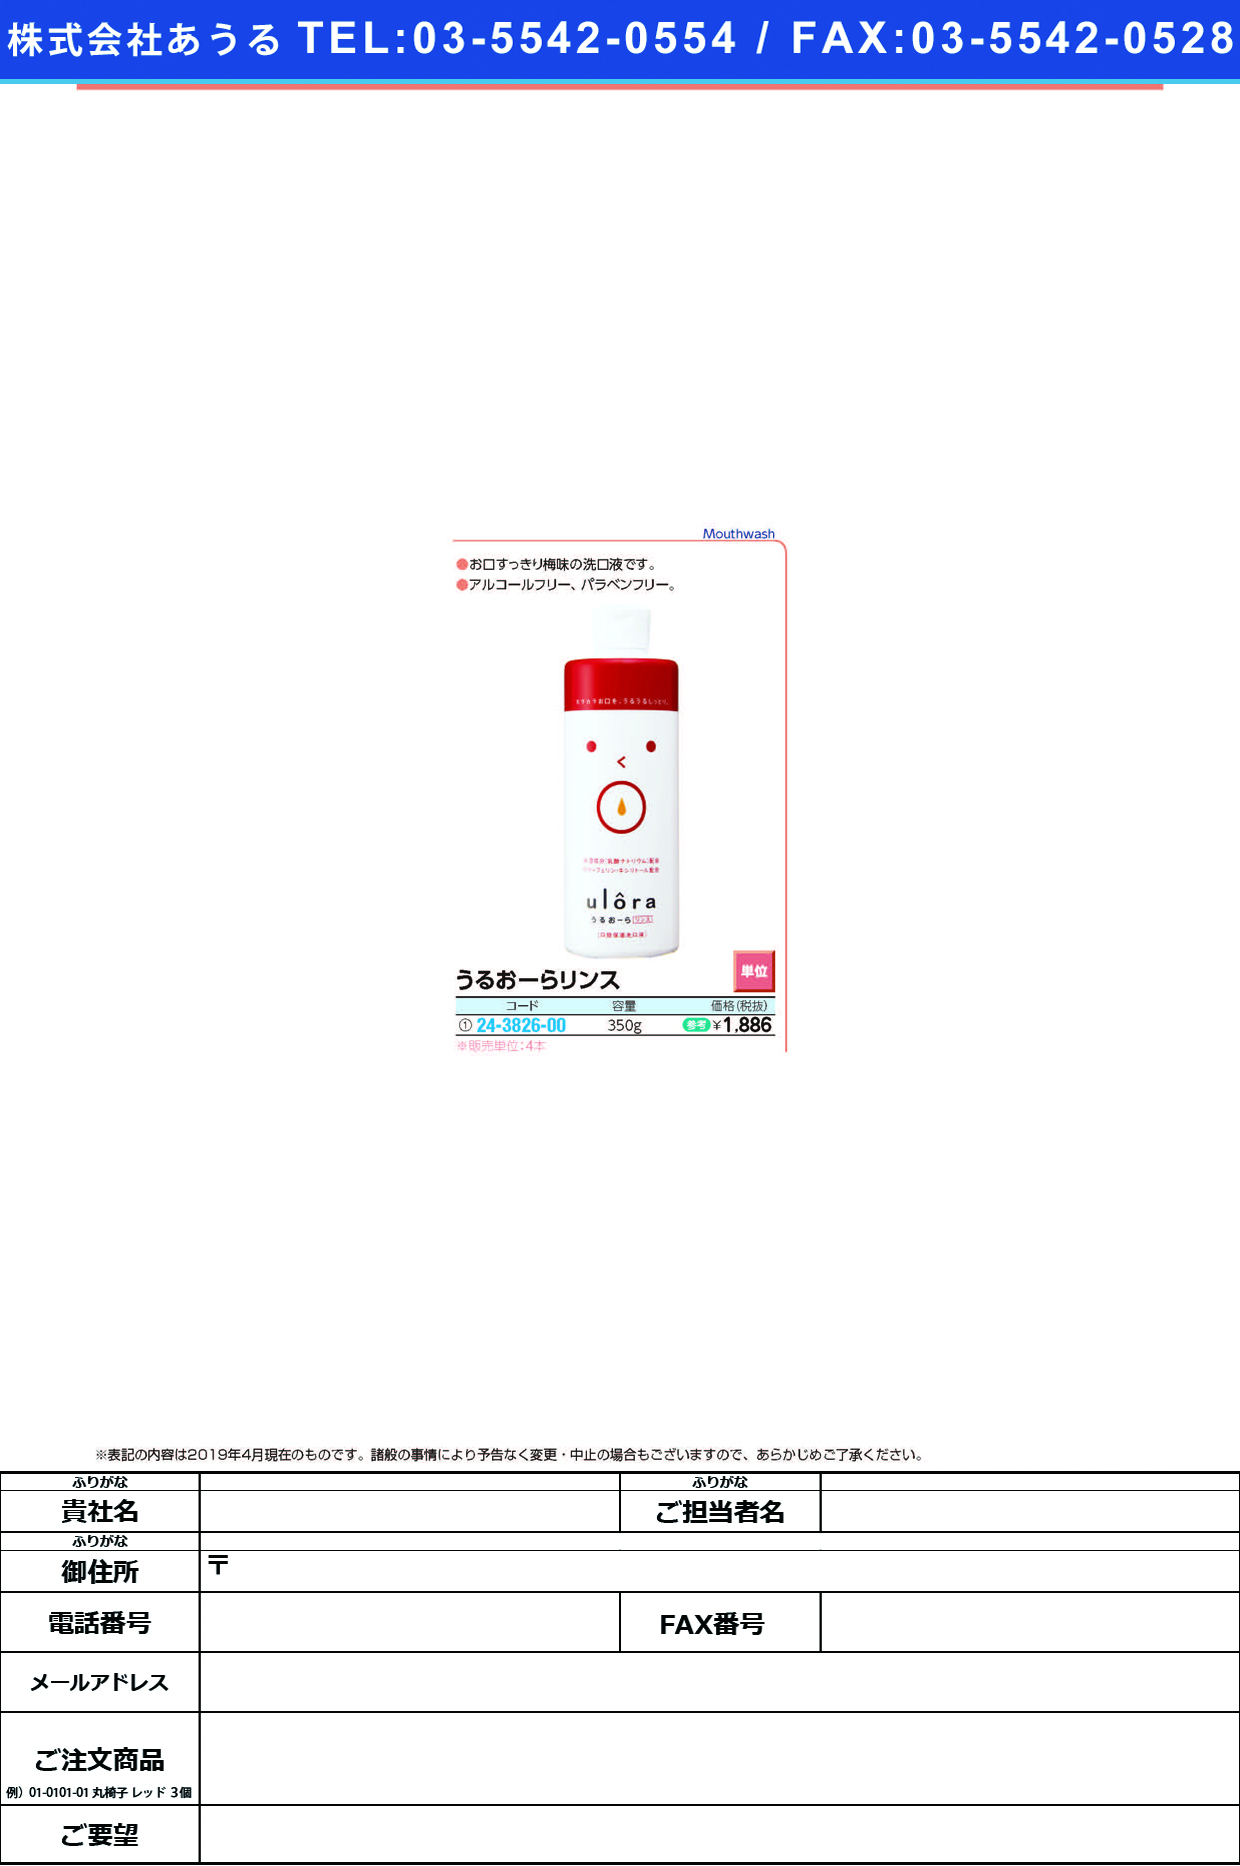 (24-3826-00)うるおーらリンス 350G ｳﾙｰﾗﾘﾝｽ【4本単位】【2019年カタログ商品】